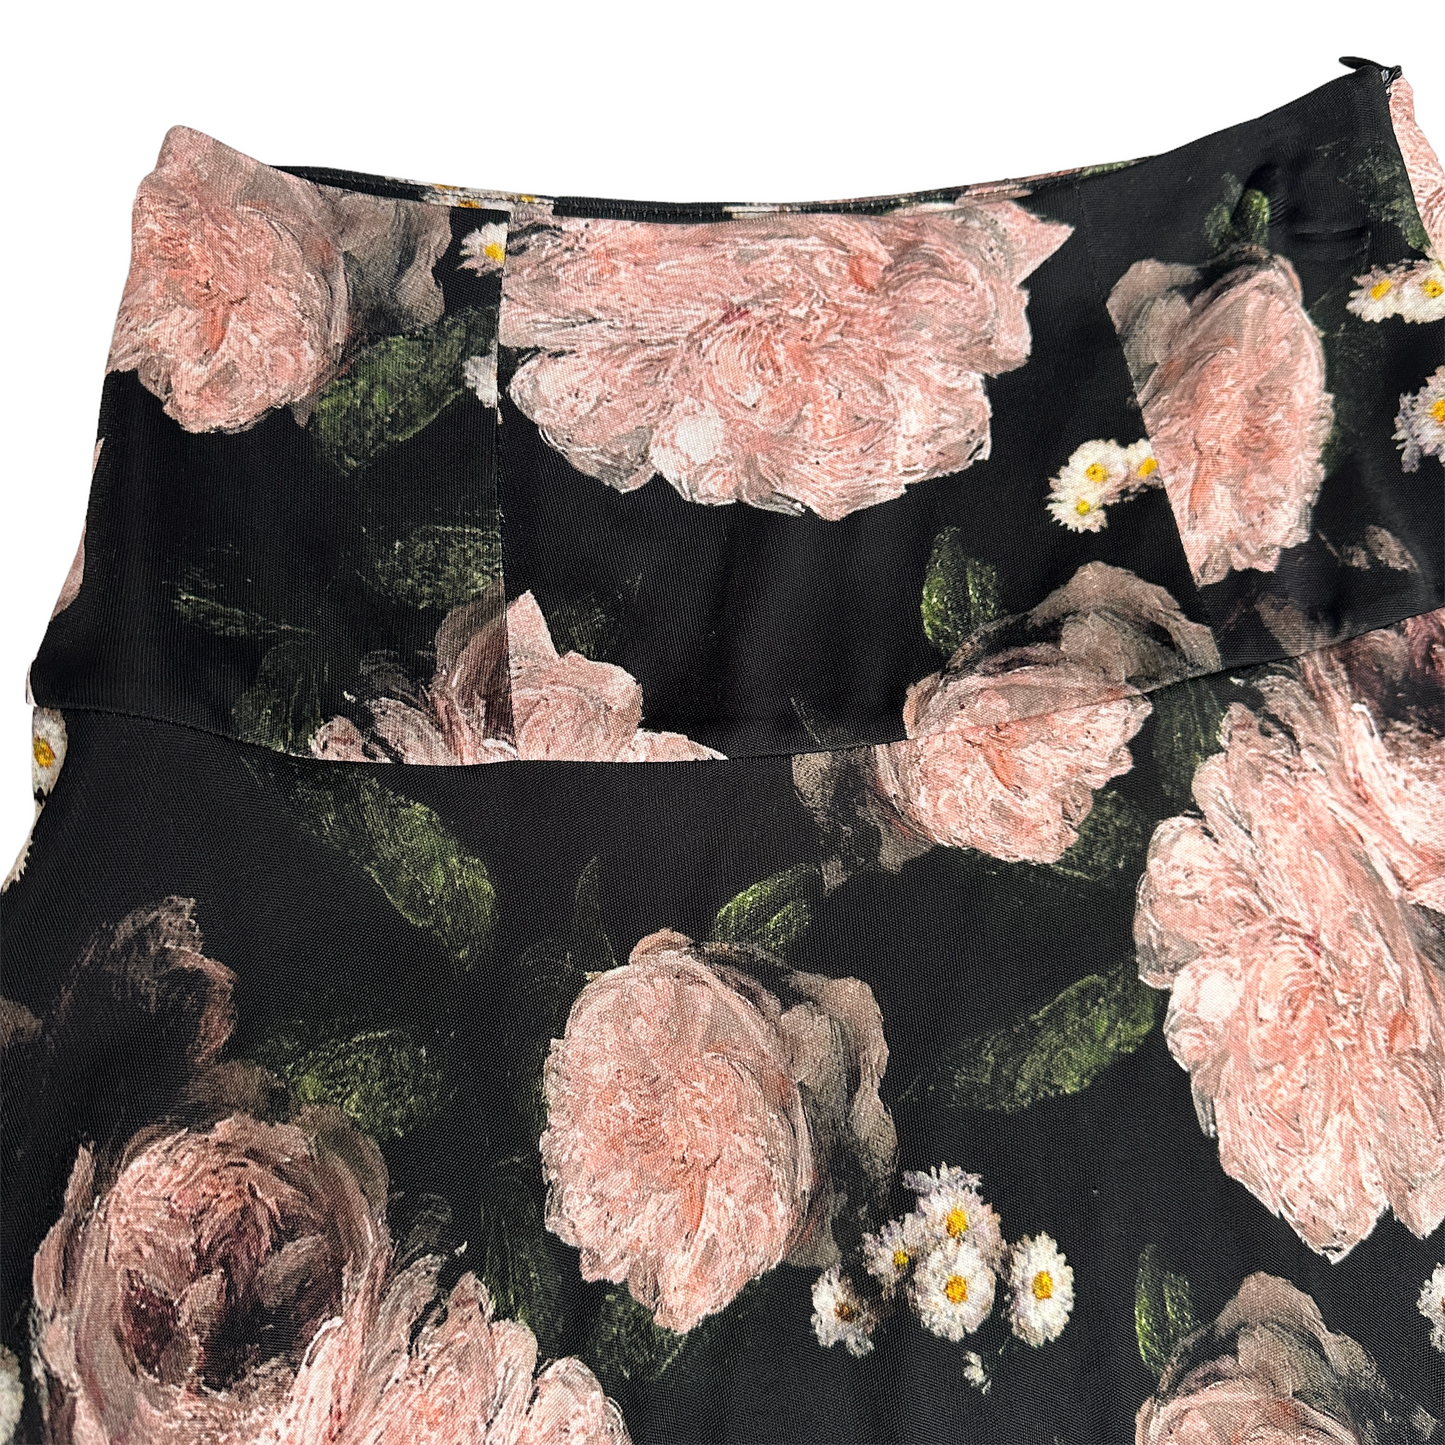 Flower Print Skirt - 4